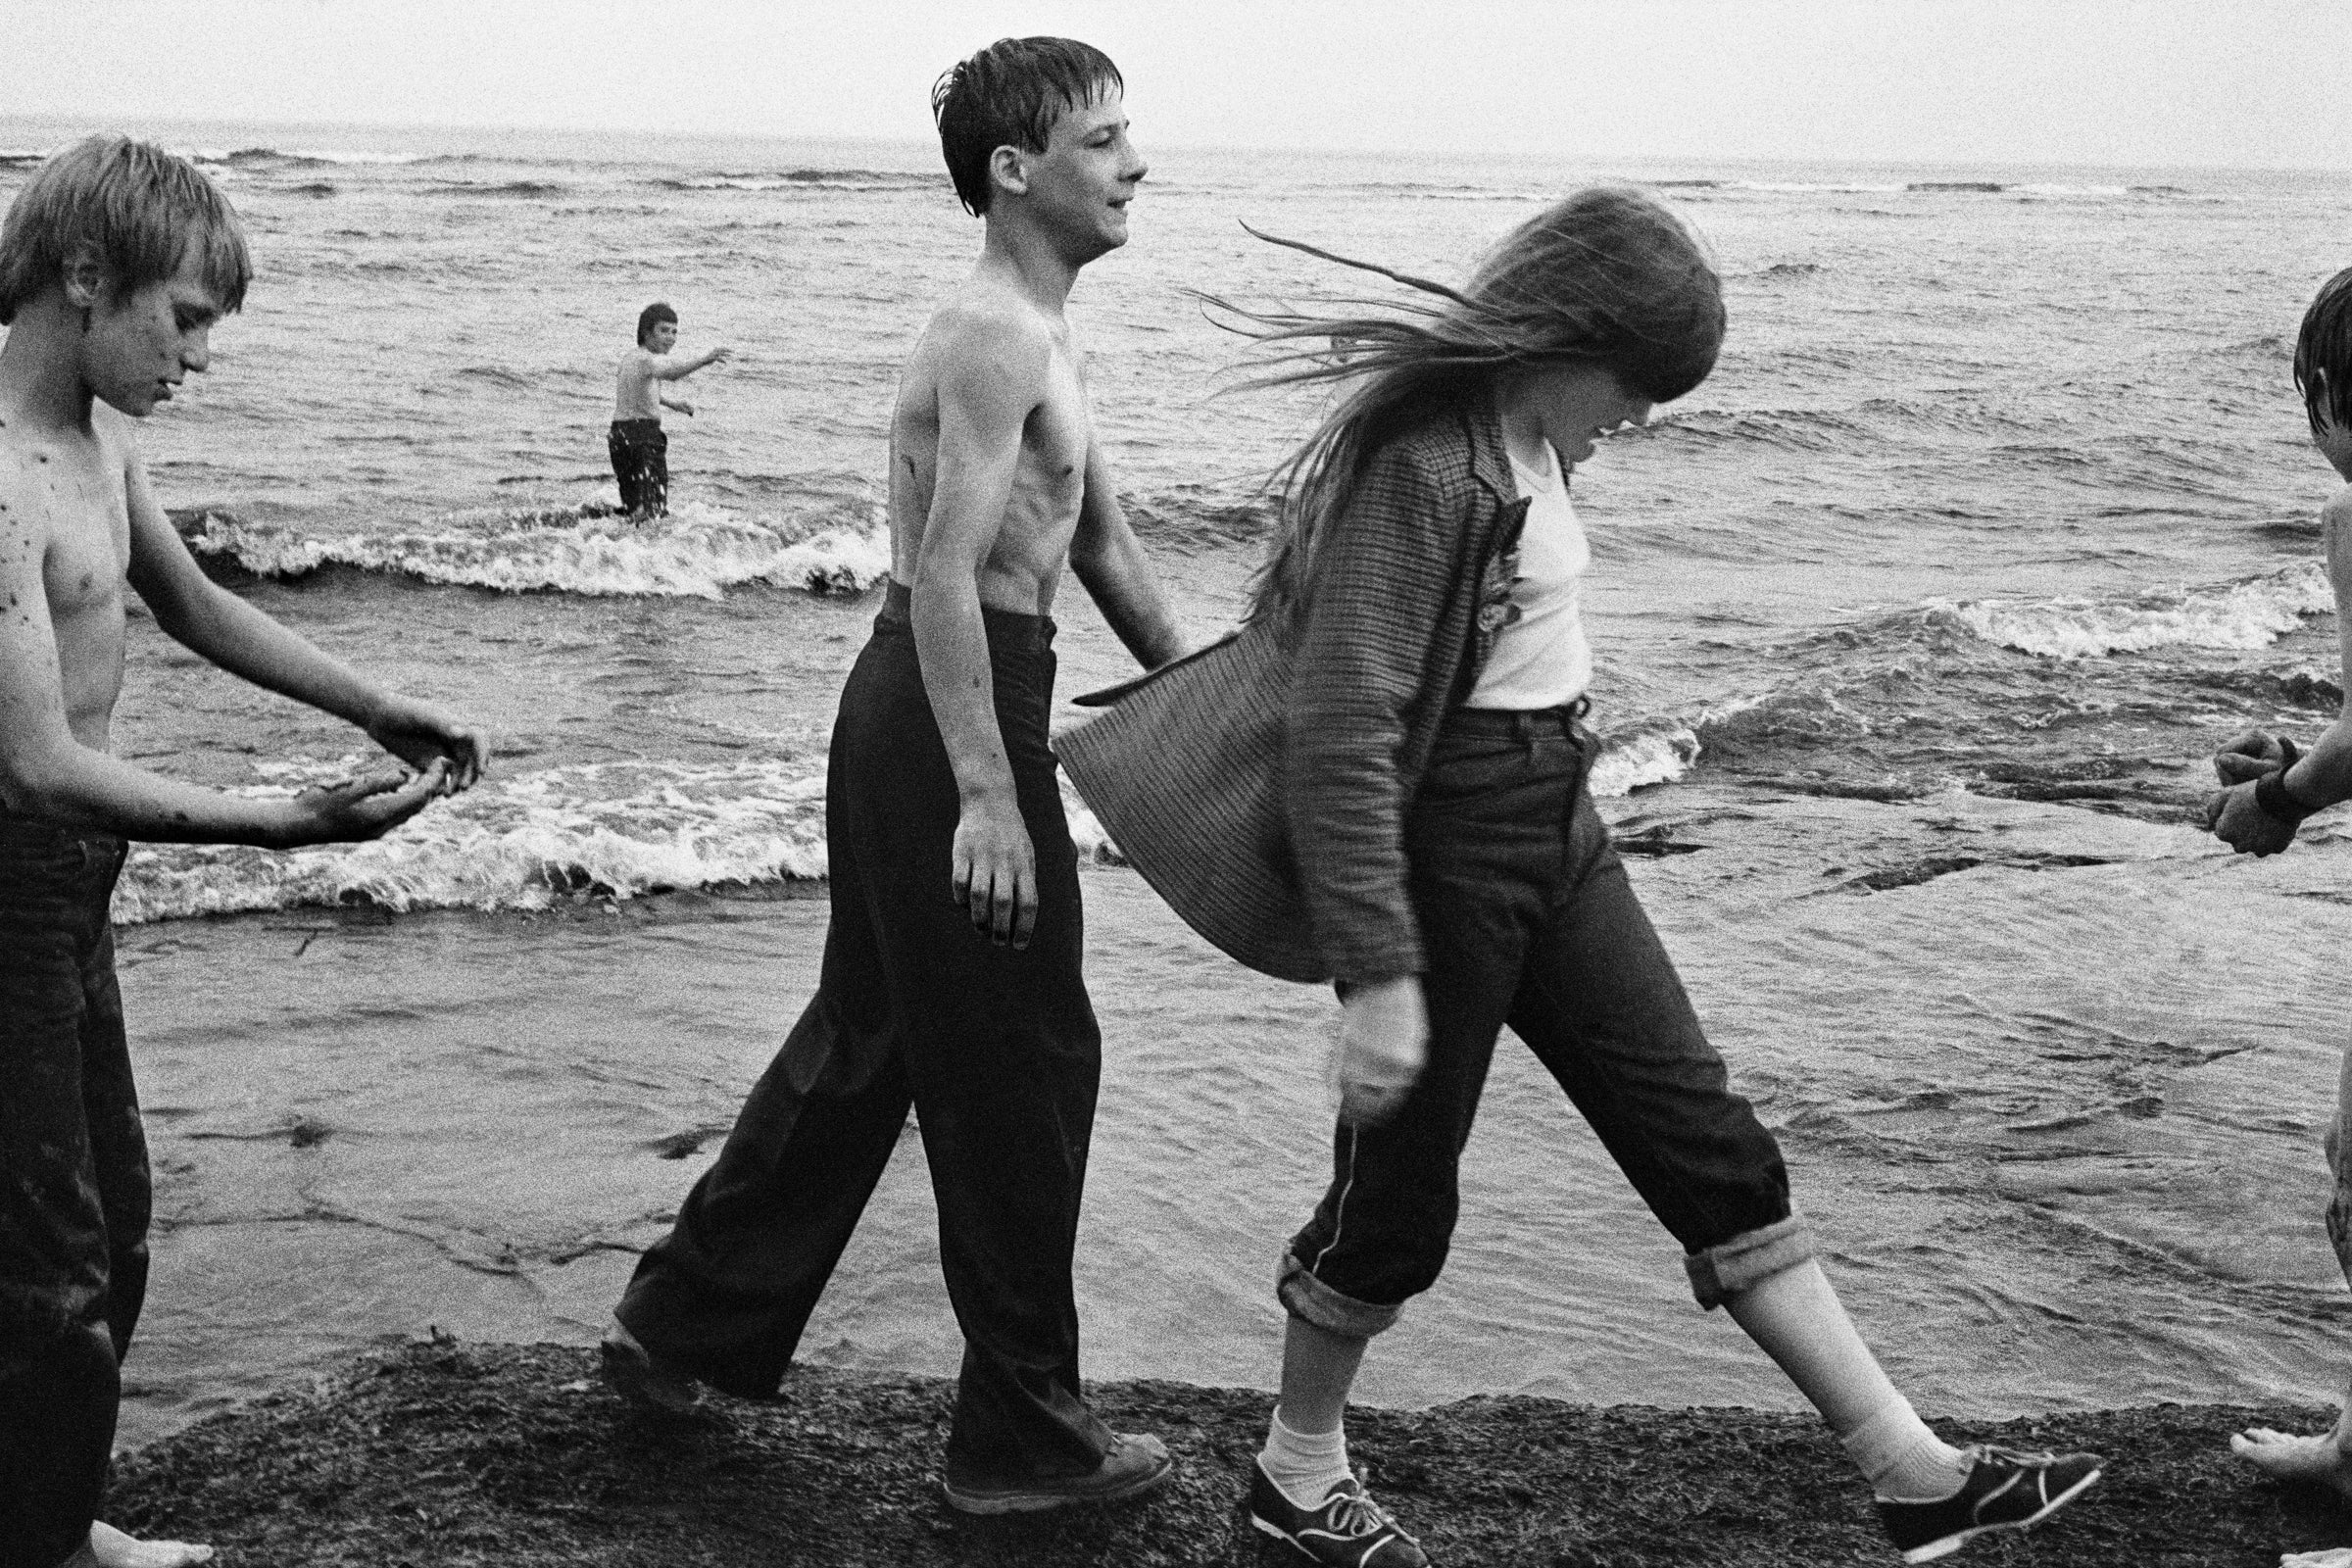 Markéta Luskačová - By The Sea: Photographs from the North East 1976-1980